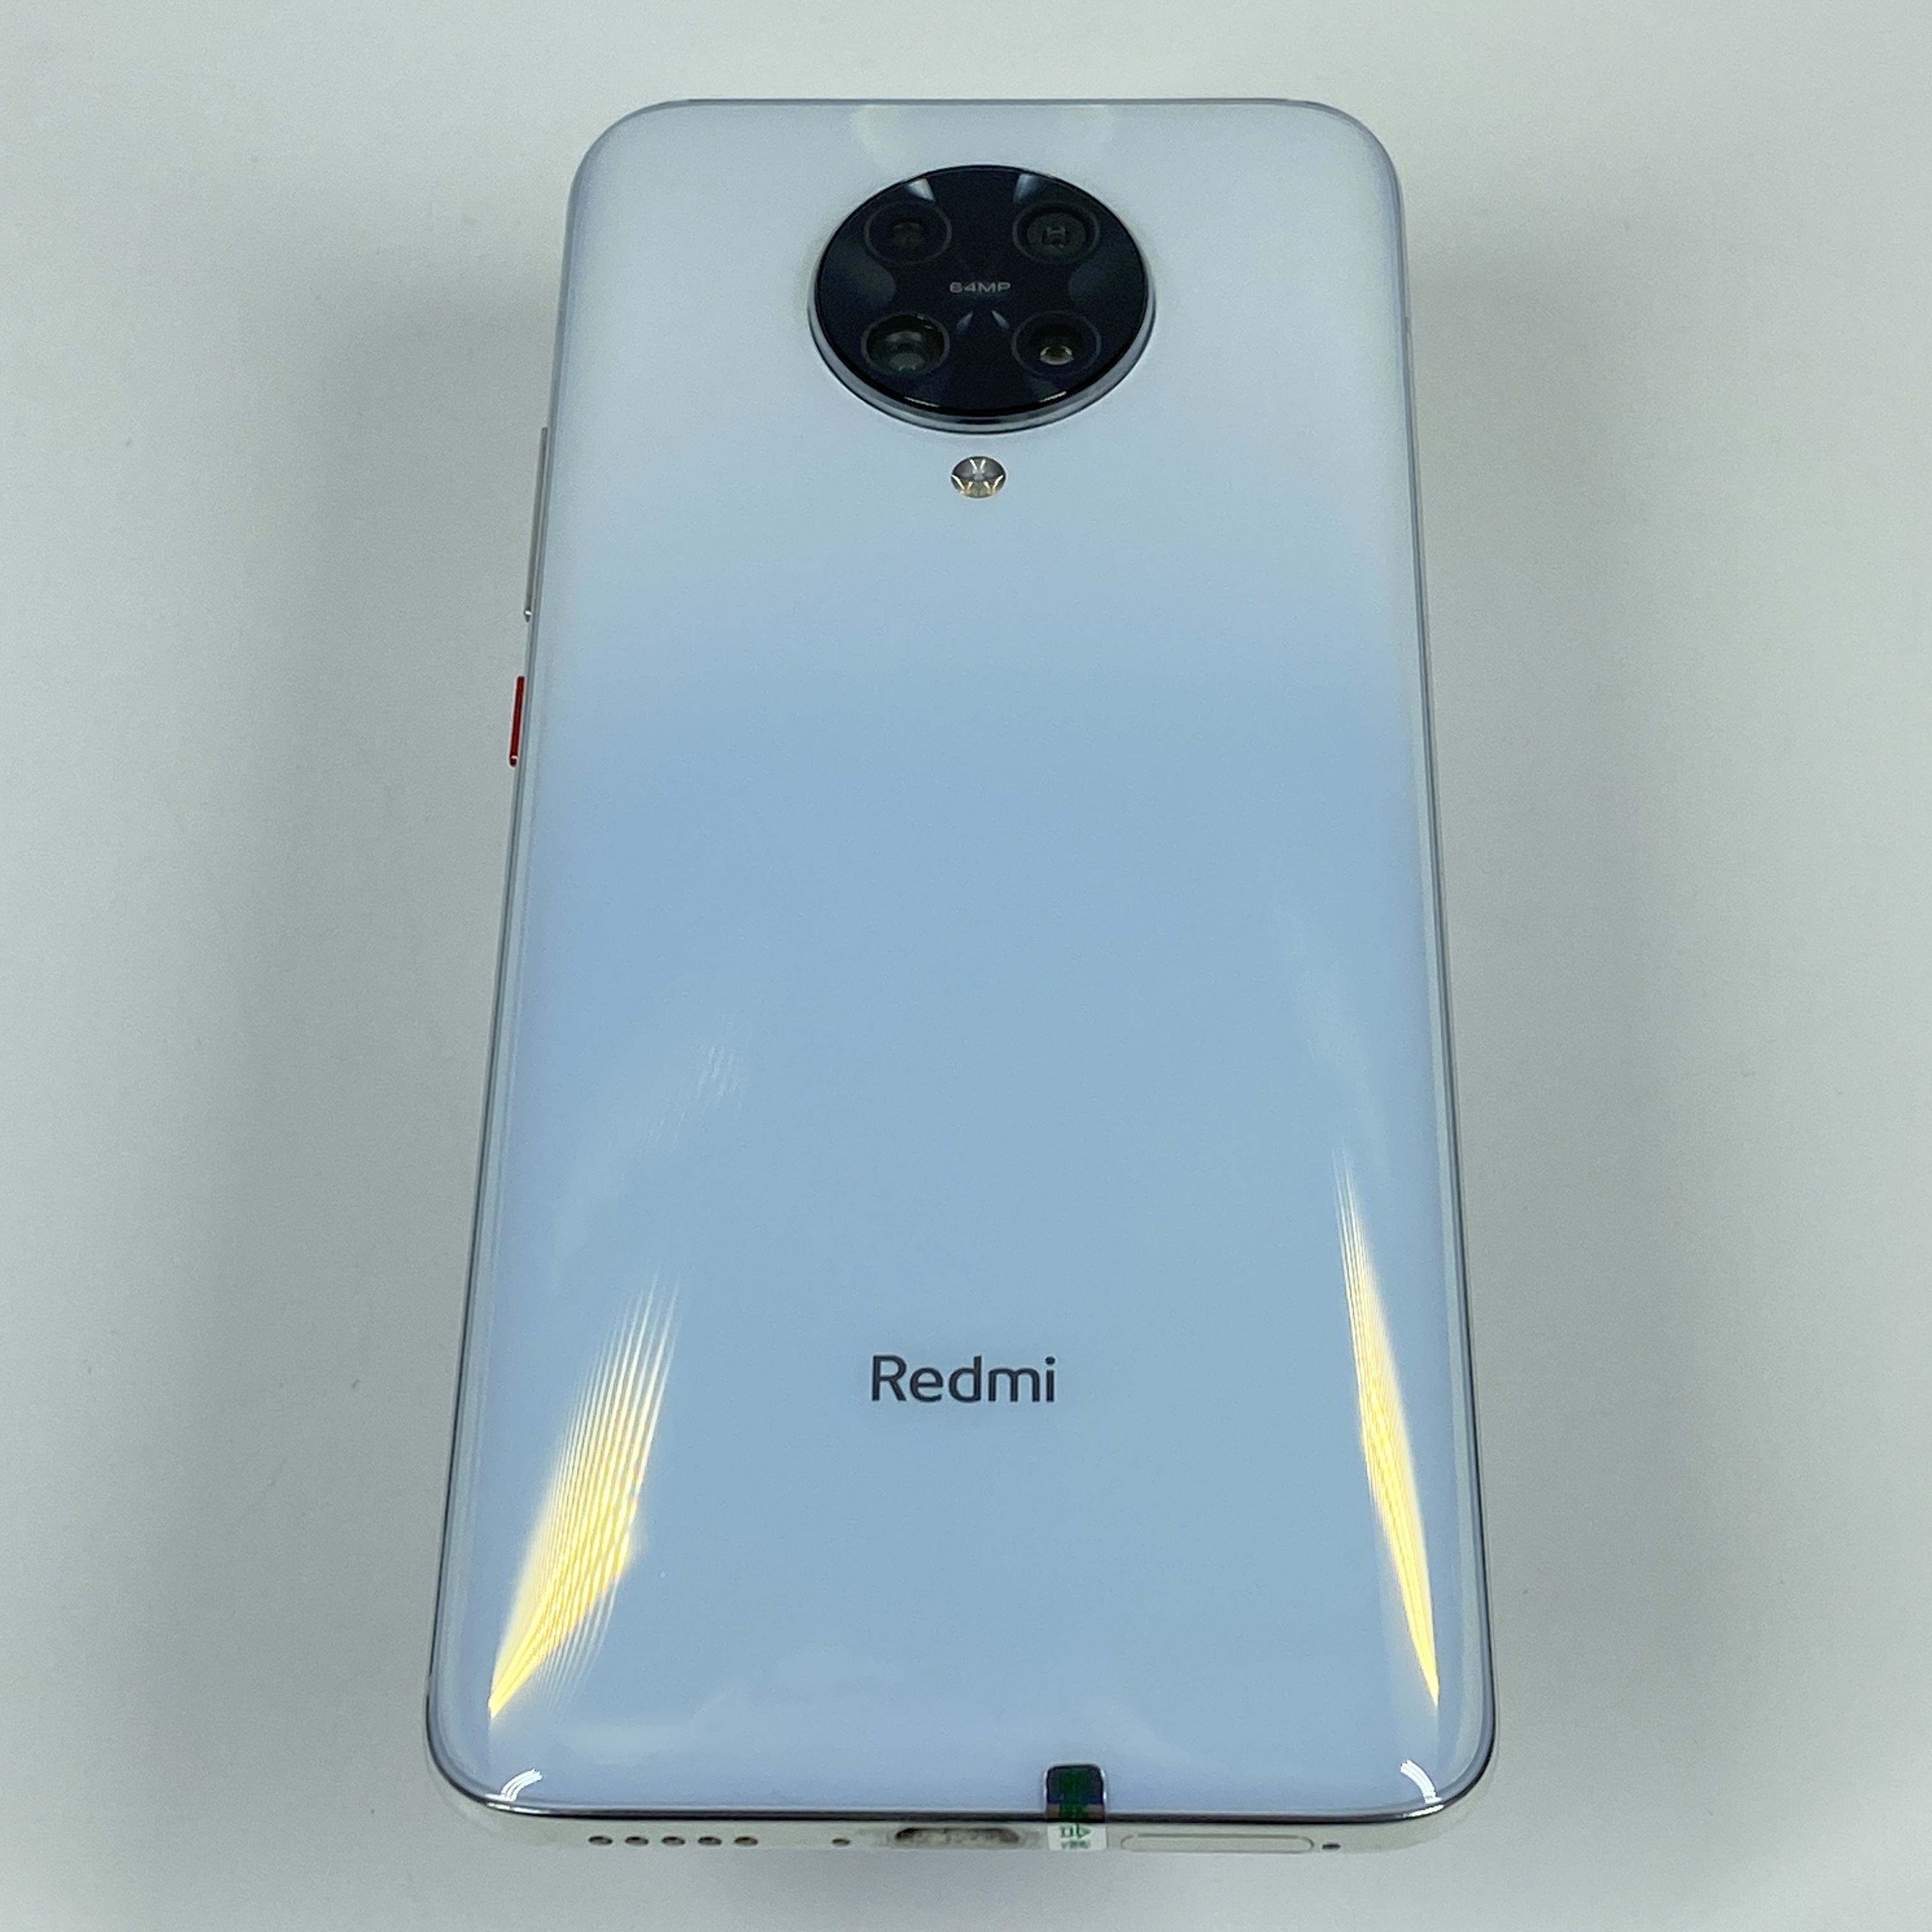 小米【Redmi K30 Pro 变焦版】5G全网通 月幕白 8G/128G 国行 9成新 真机实拍